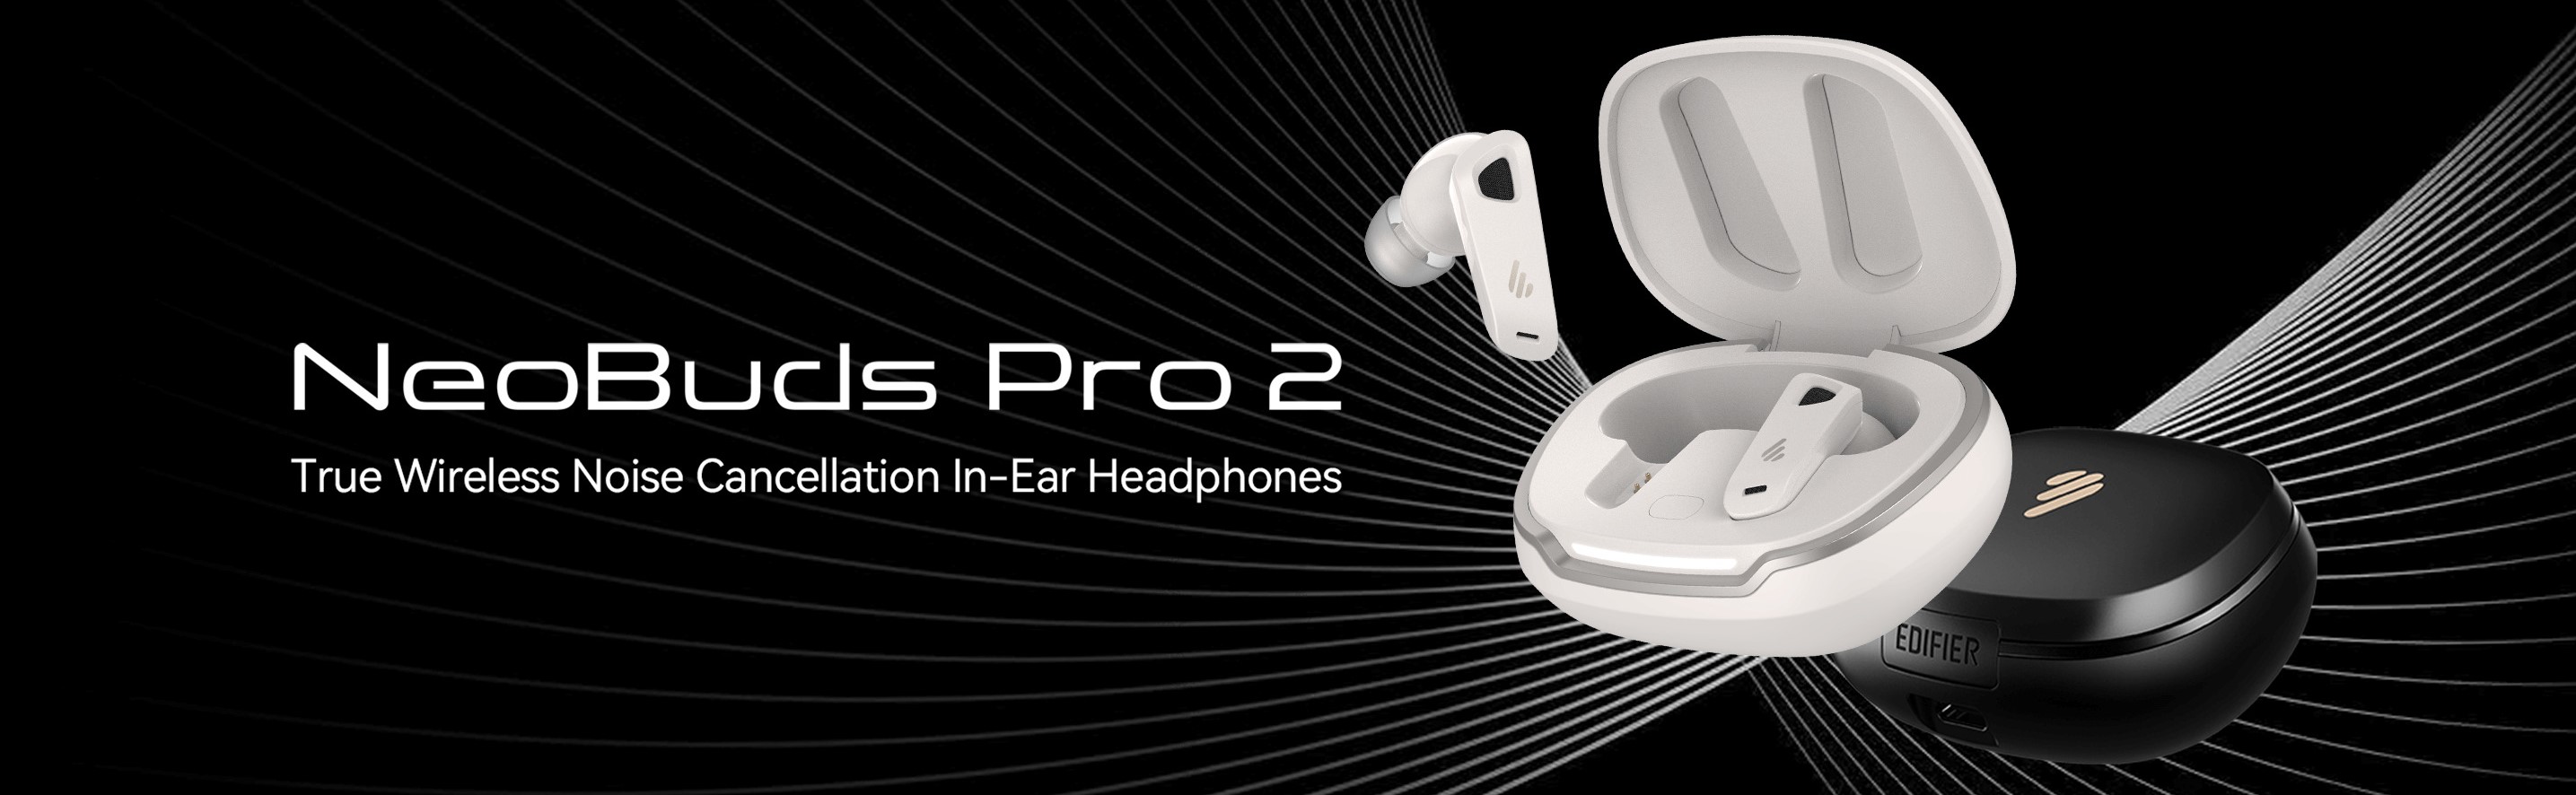 True Wireless earbuds Edifier NeoBuds Pro 2